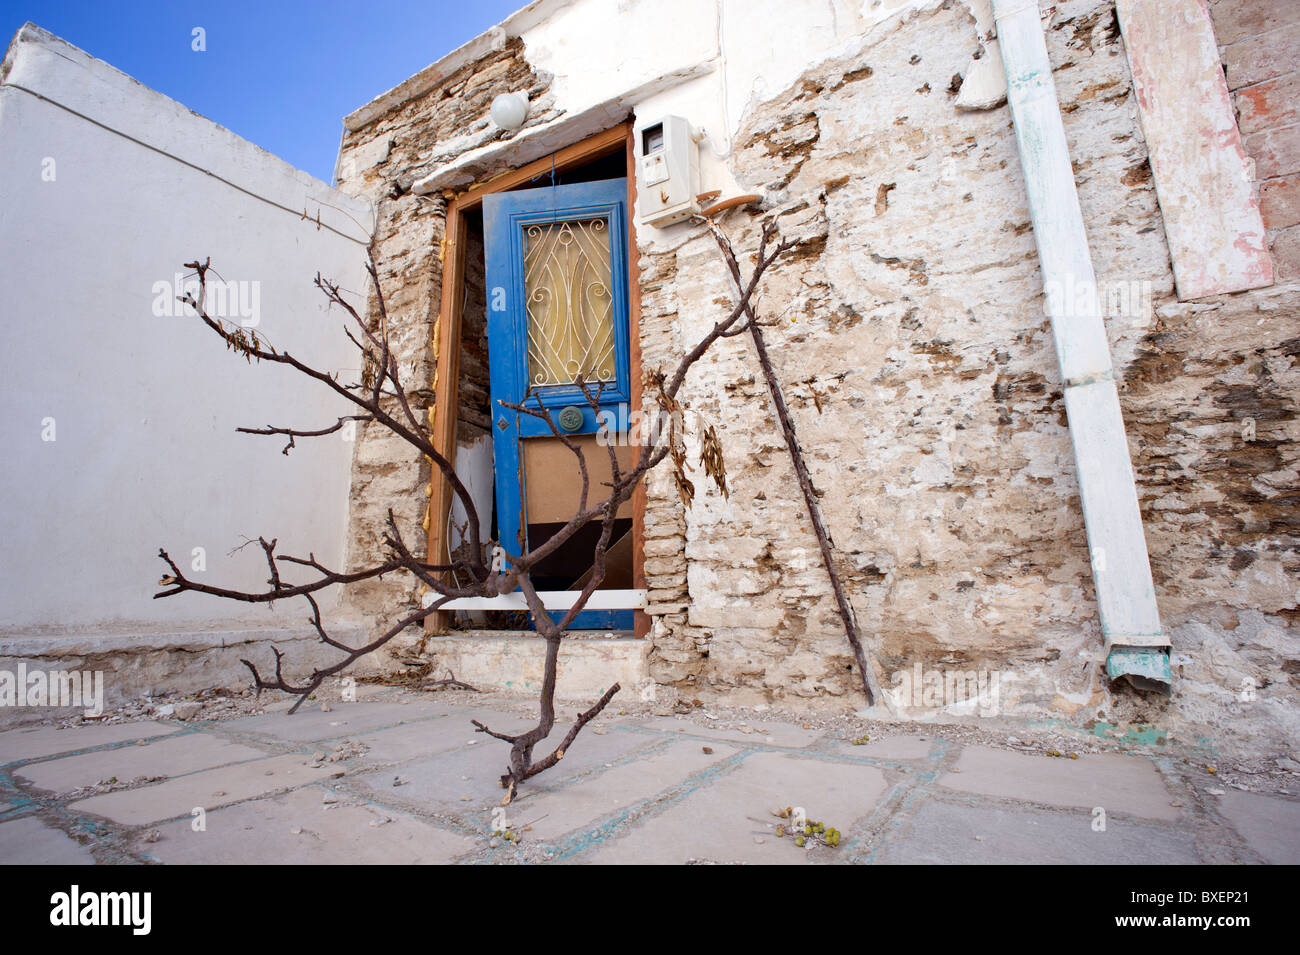 Facciata di una casa abbandonata in Isternia, un piccolo villaggio greco situato sull'Cyclade isola di Tinos. Foto Stock